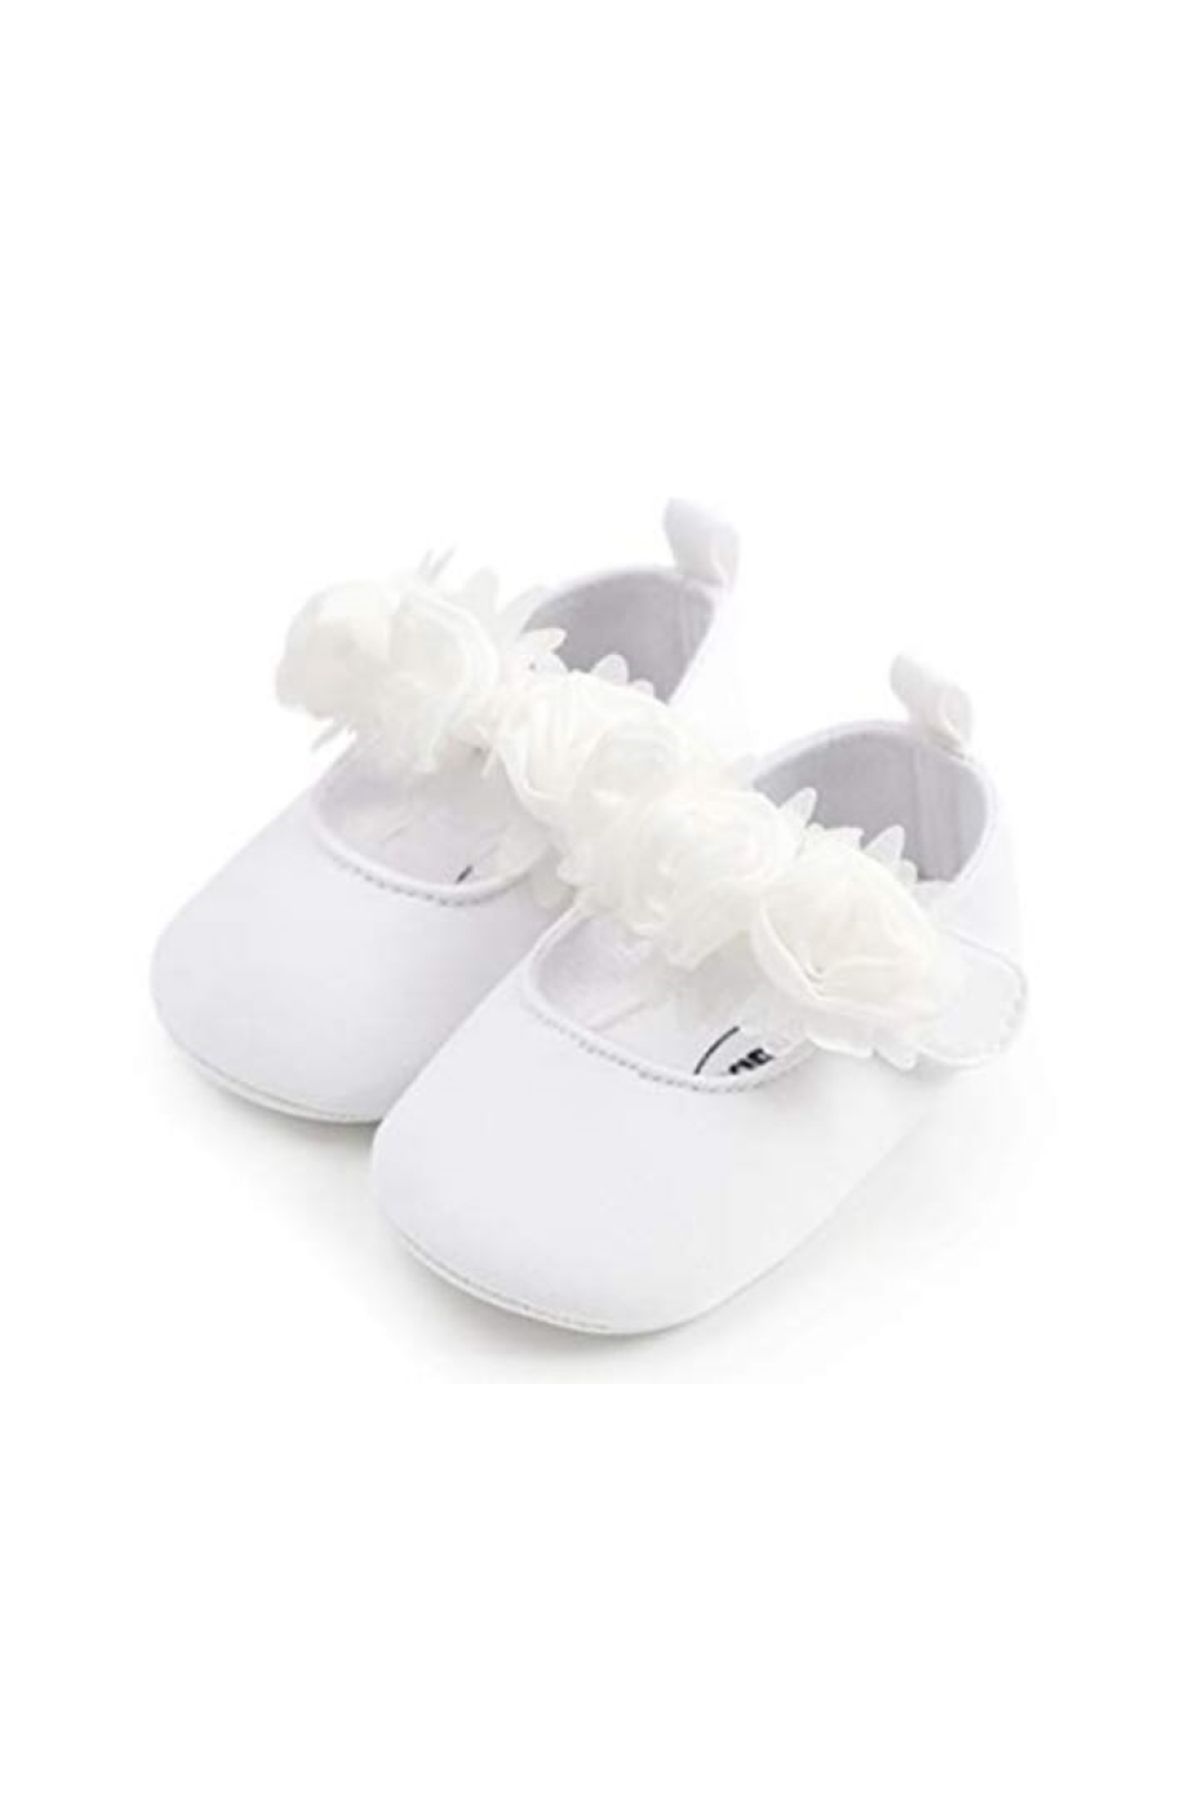 hira kids collection Kız Bebek Patik Ayakkabı